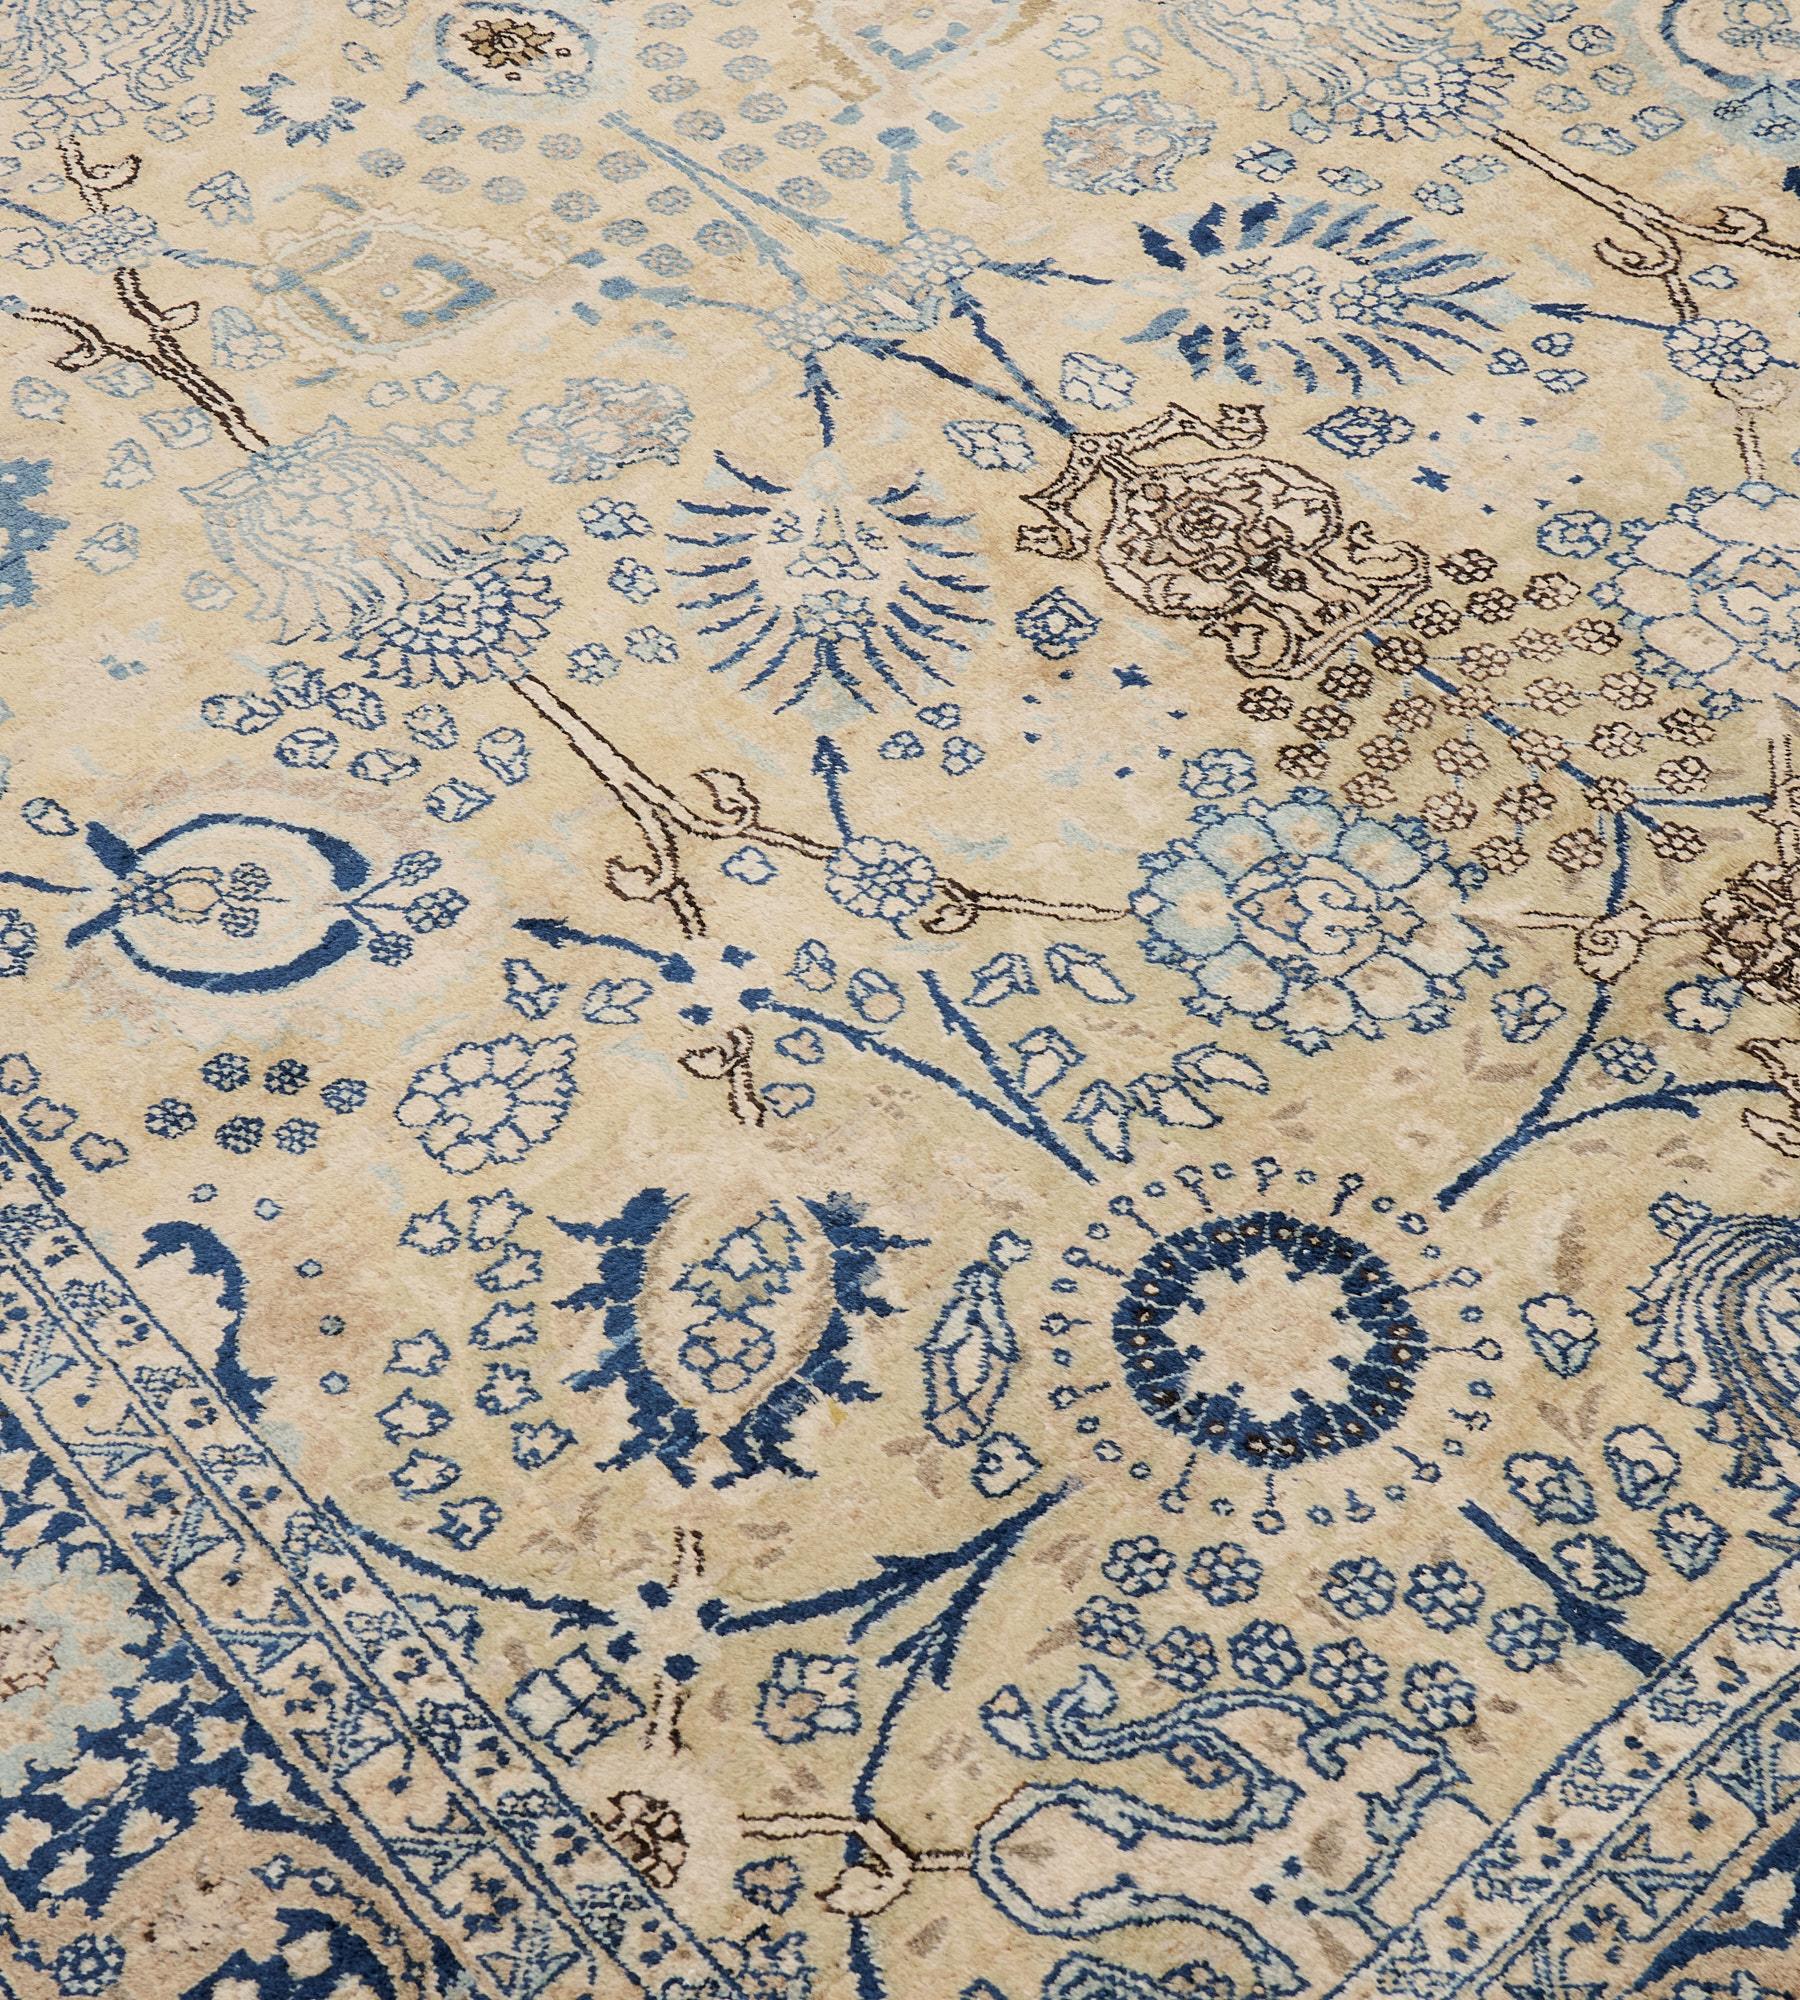 Ce tapis traditionnel persan Tabriz tissé à la main présente un champ brun chamois doux avec une colonne centrale de vases fleuris noir charbon, bleu indigo, bleu clair et ivoire reliés par des palmettes et des lianes florales, dans une bordure bleu